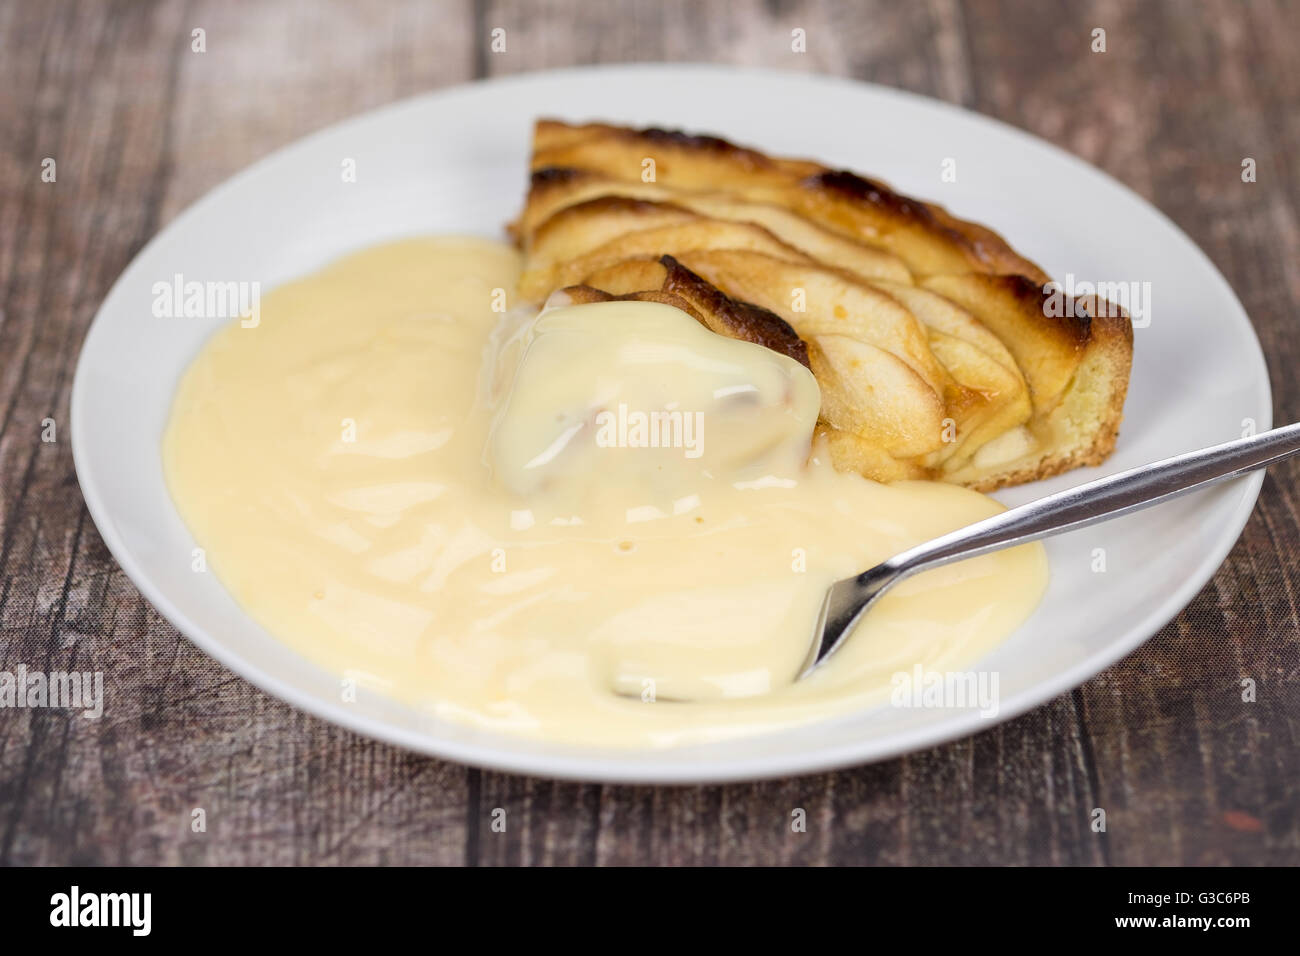 Une tranche de tarte aux pommes et crème anglaise avec une cuillère Banque D'Images